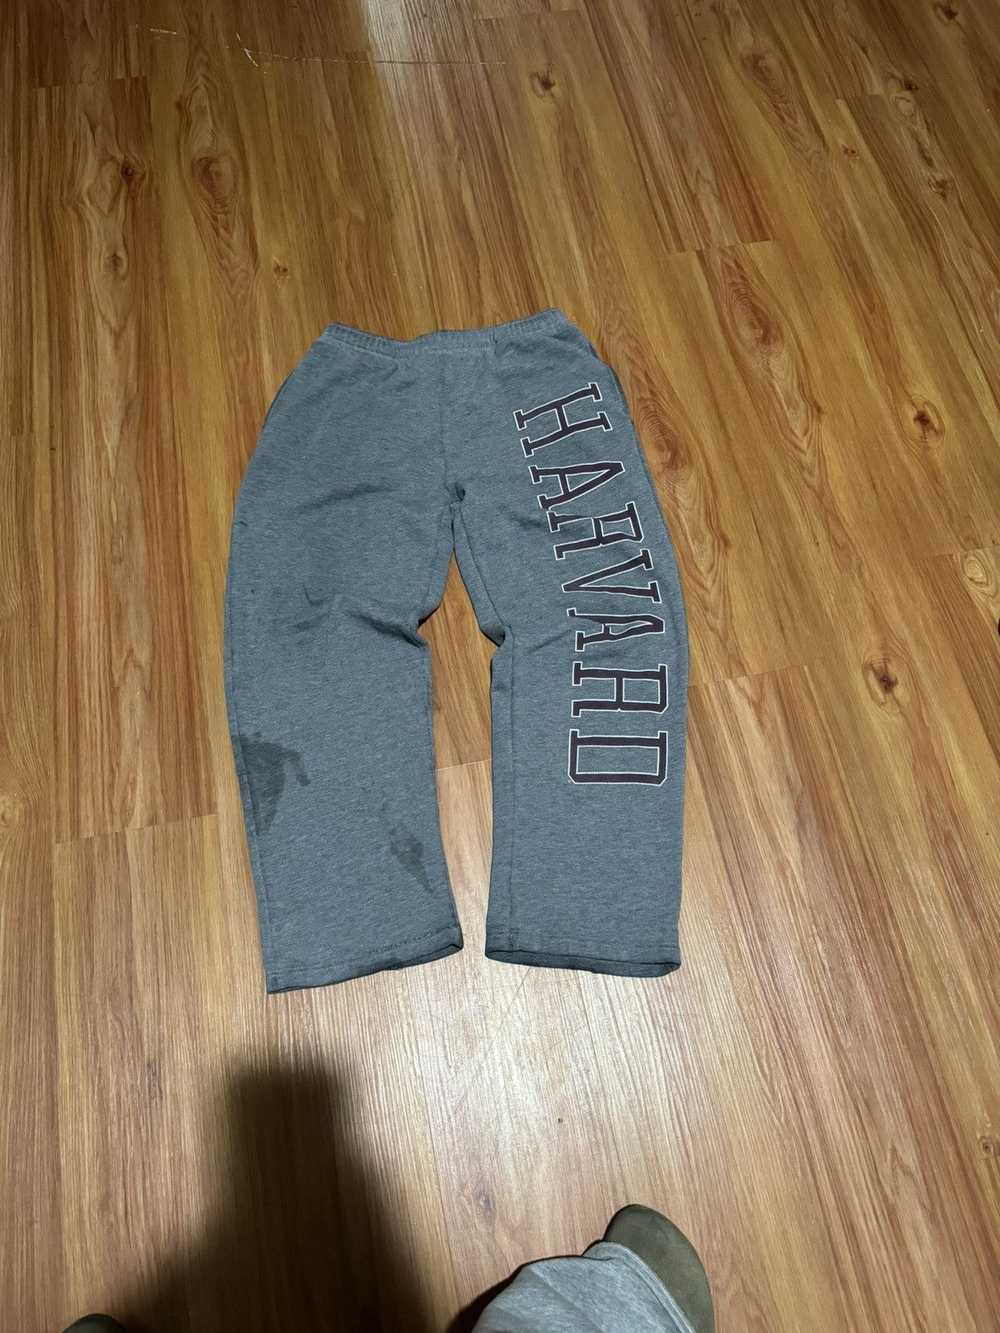 American College × Vintage Harvard sweatpants - image 1